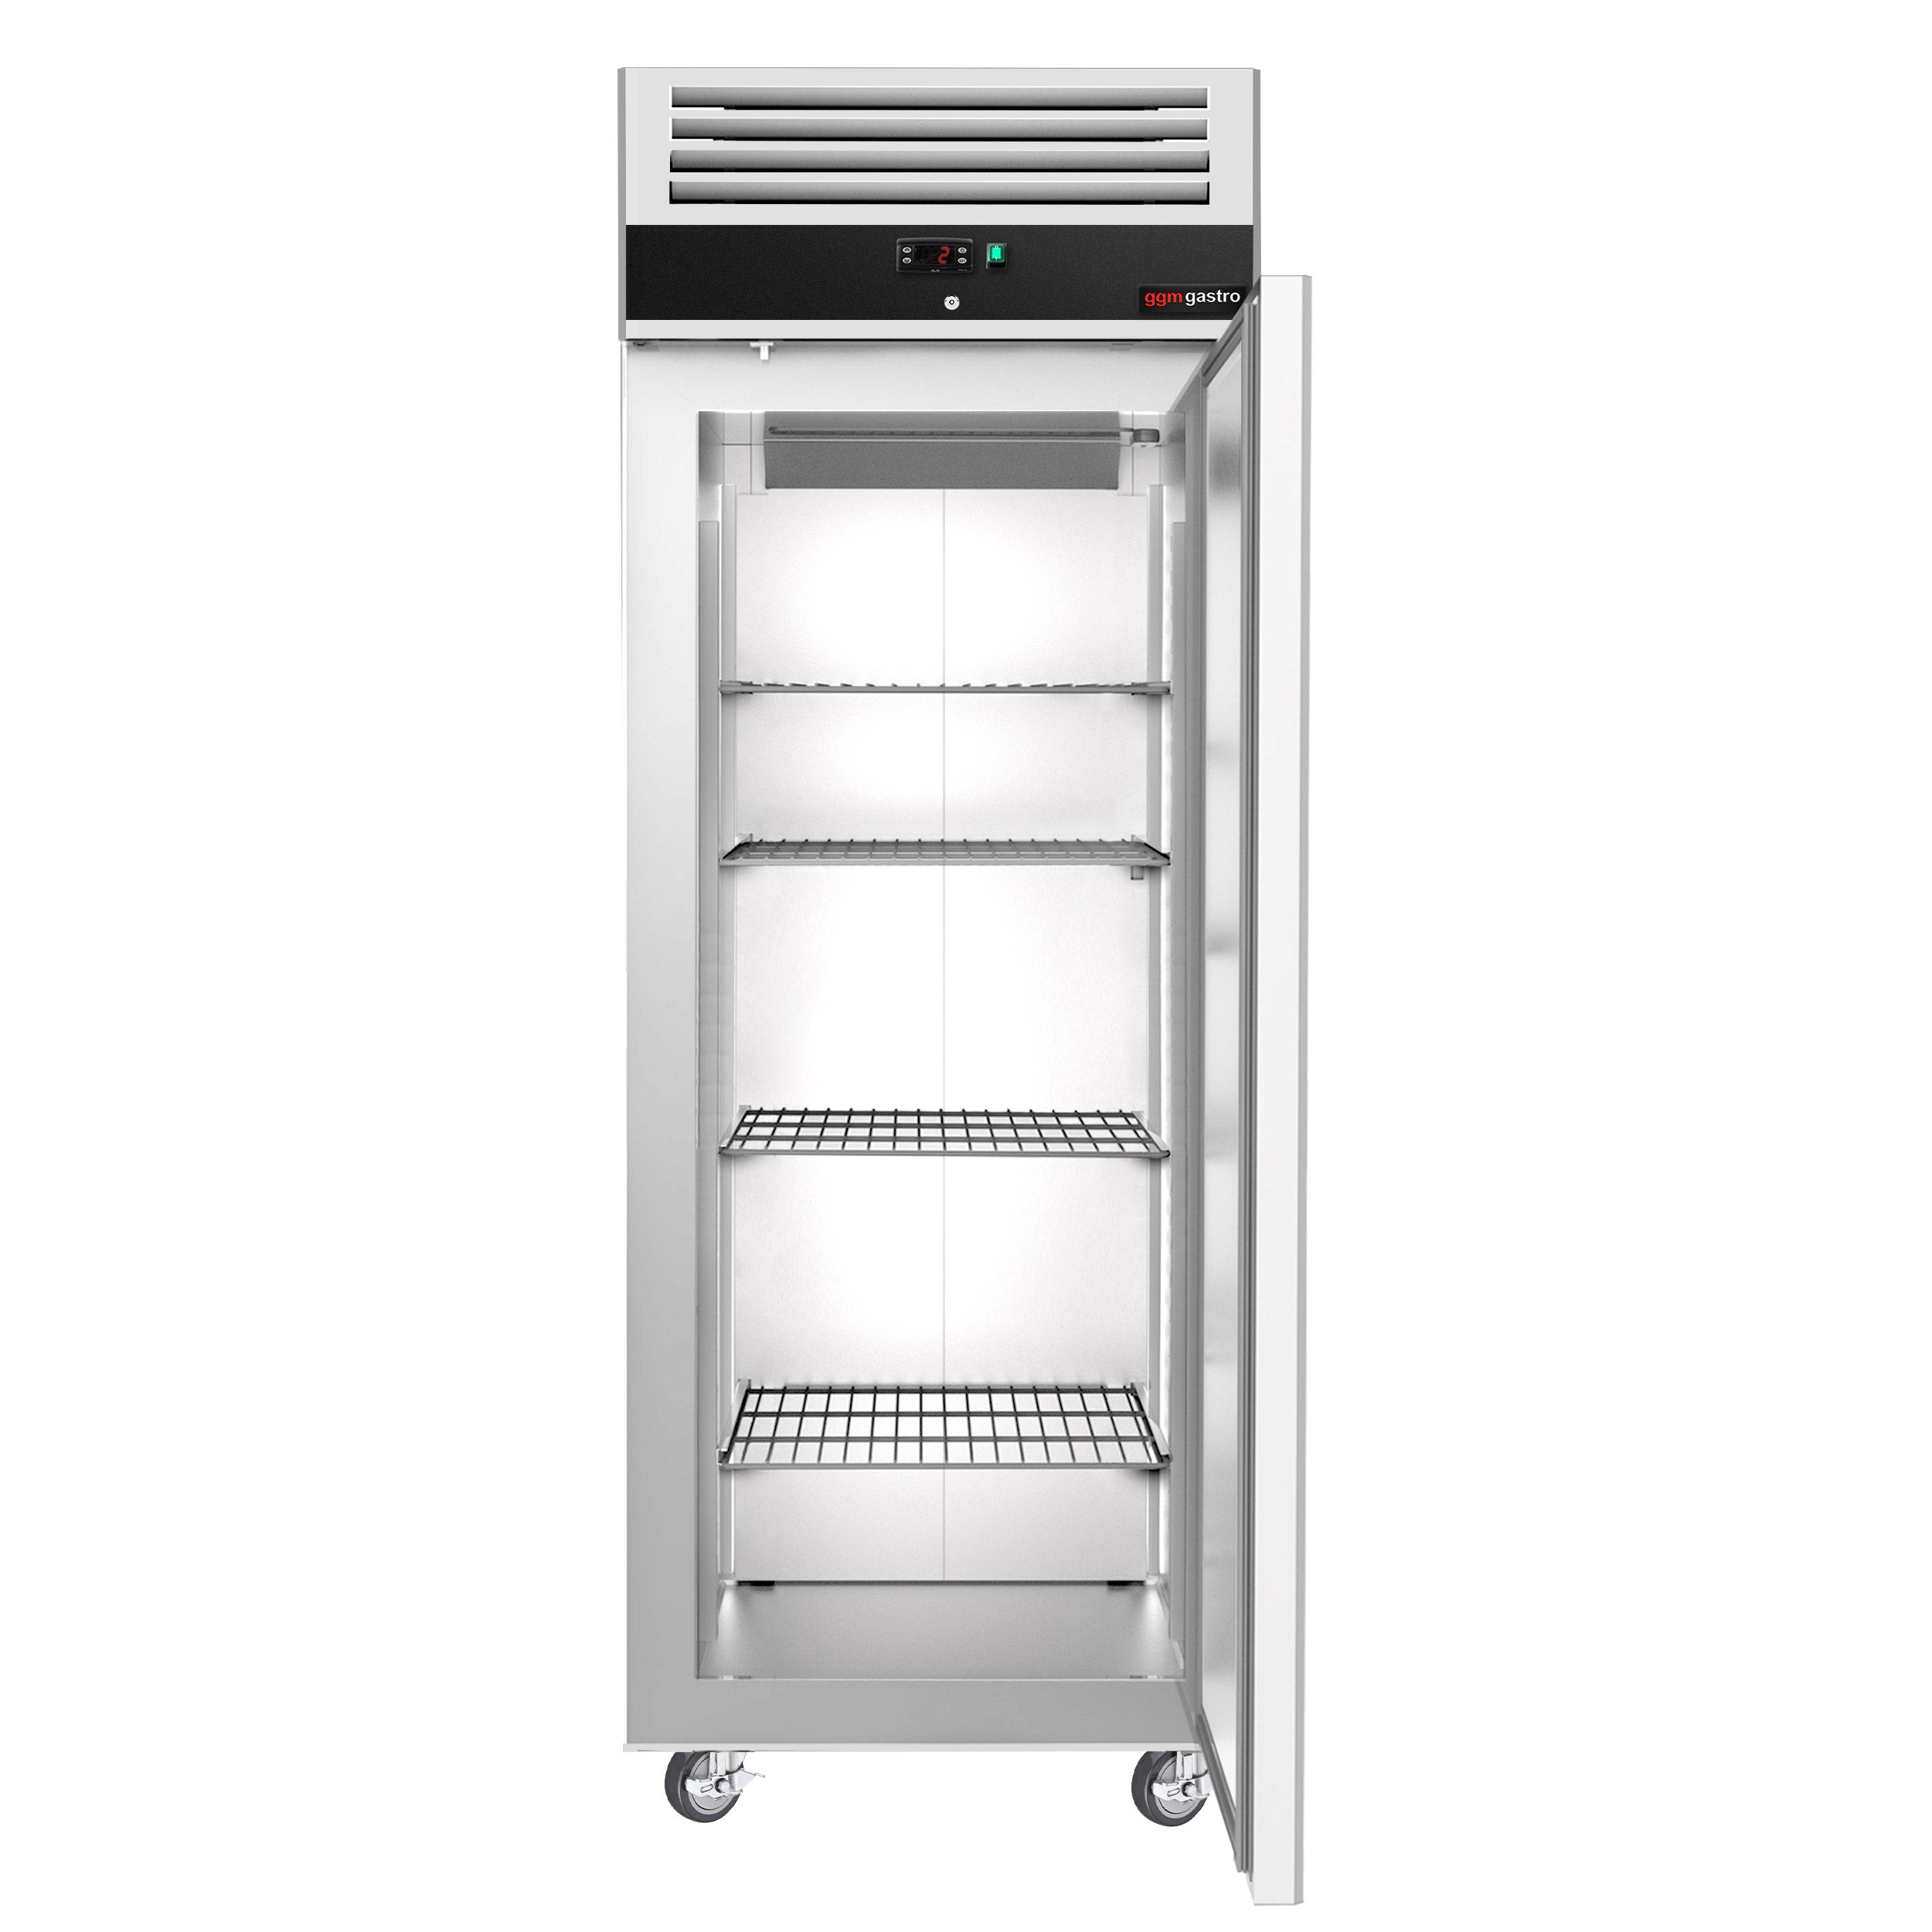 Køleskab ECO - 0,74 x 0,83 m - med 1 dør